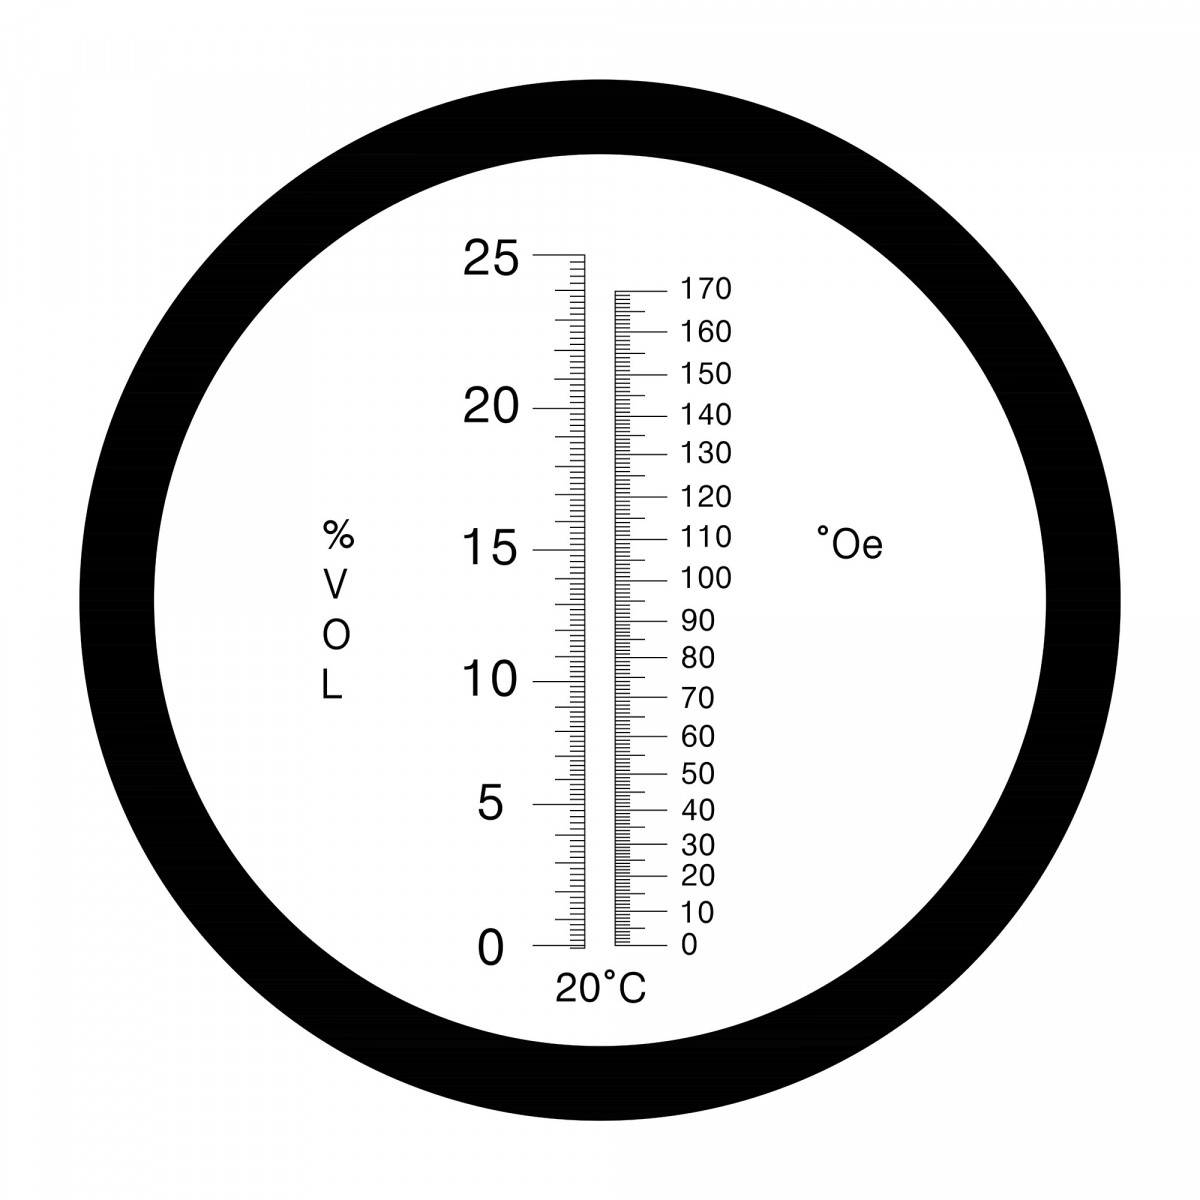 Refractometer 0-170°Oe / 0-25 vol.-% met ATC